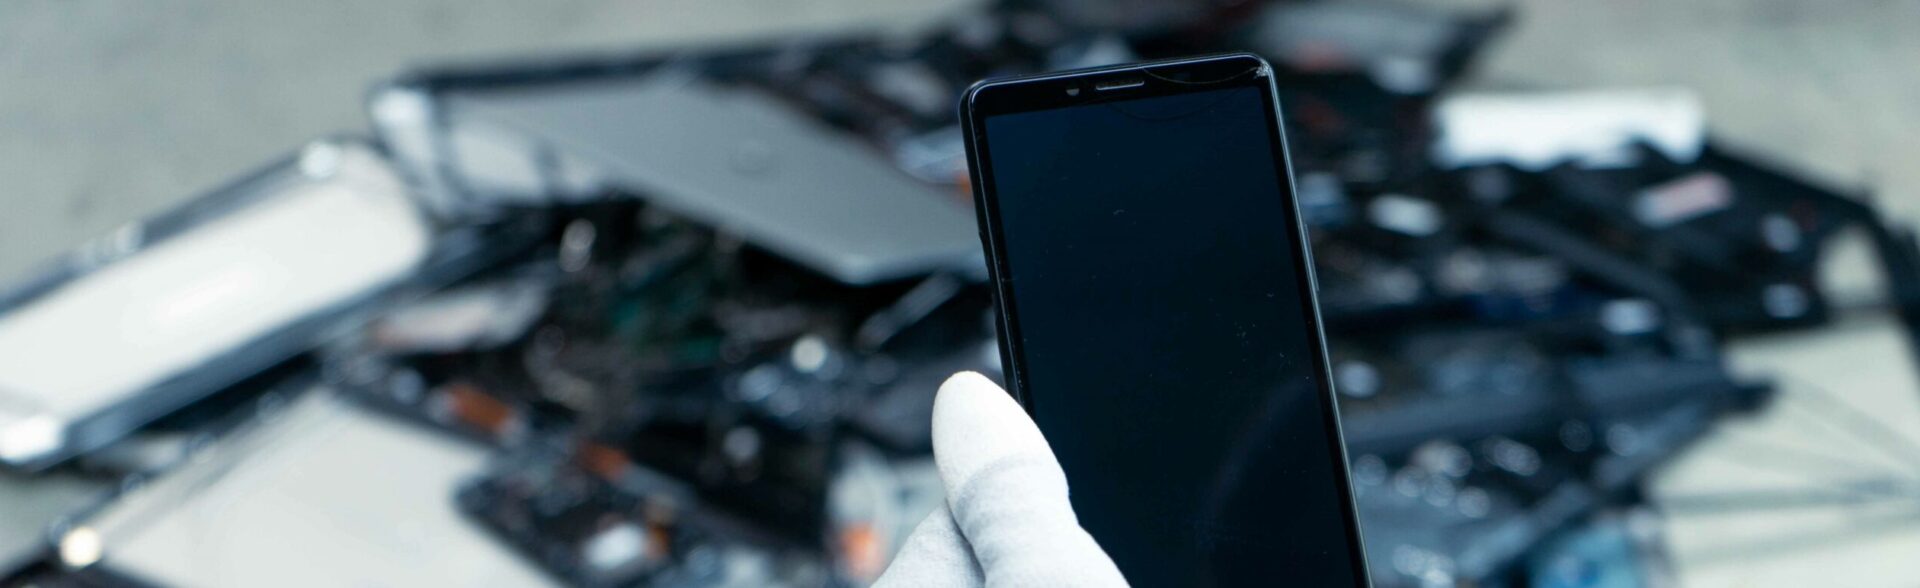 Un smartphone reconditionné tenu par les mains de Laure. Au second plan des équipements électroniques rachetés ou récupérés pour être recyclés.